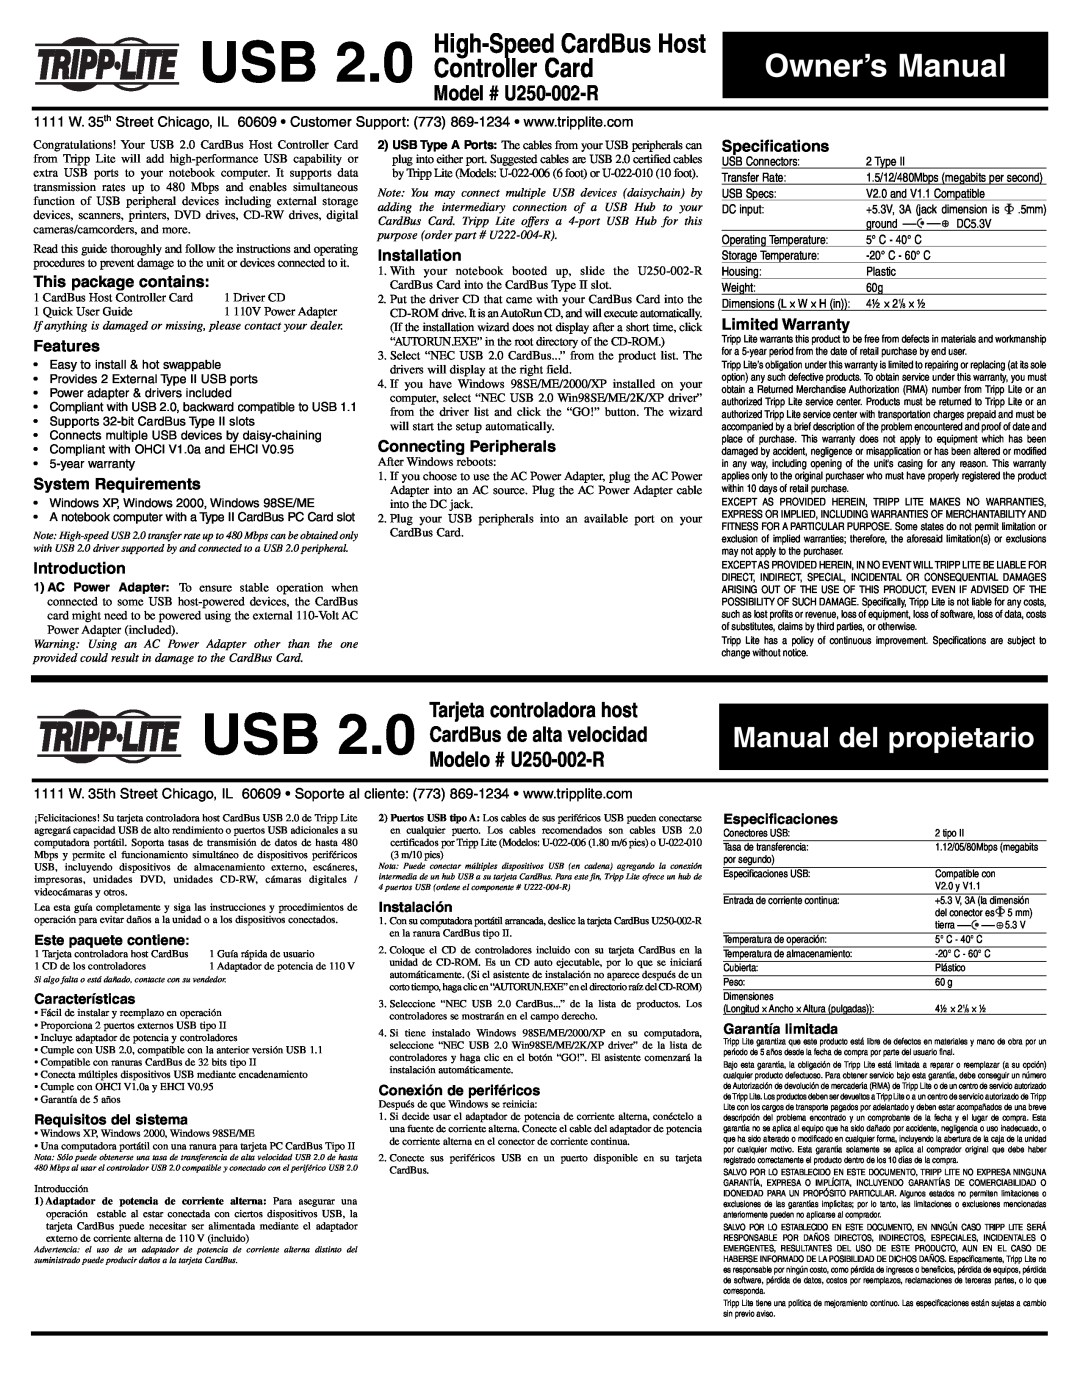 Tripp Lite owner manual Model # U250-002-R, Tarjeta controladora host, Este paquete contiene, Instalación, Features 